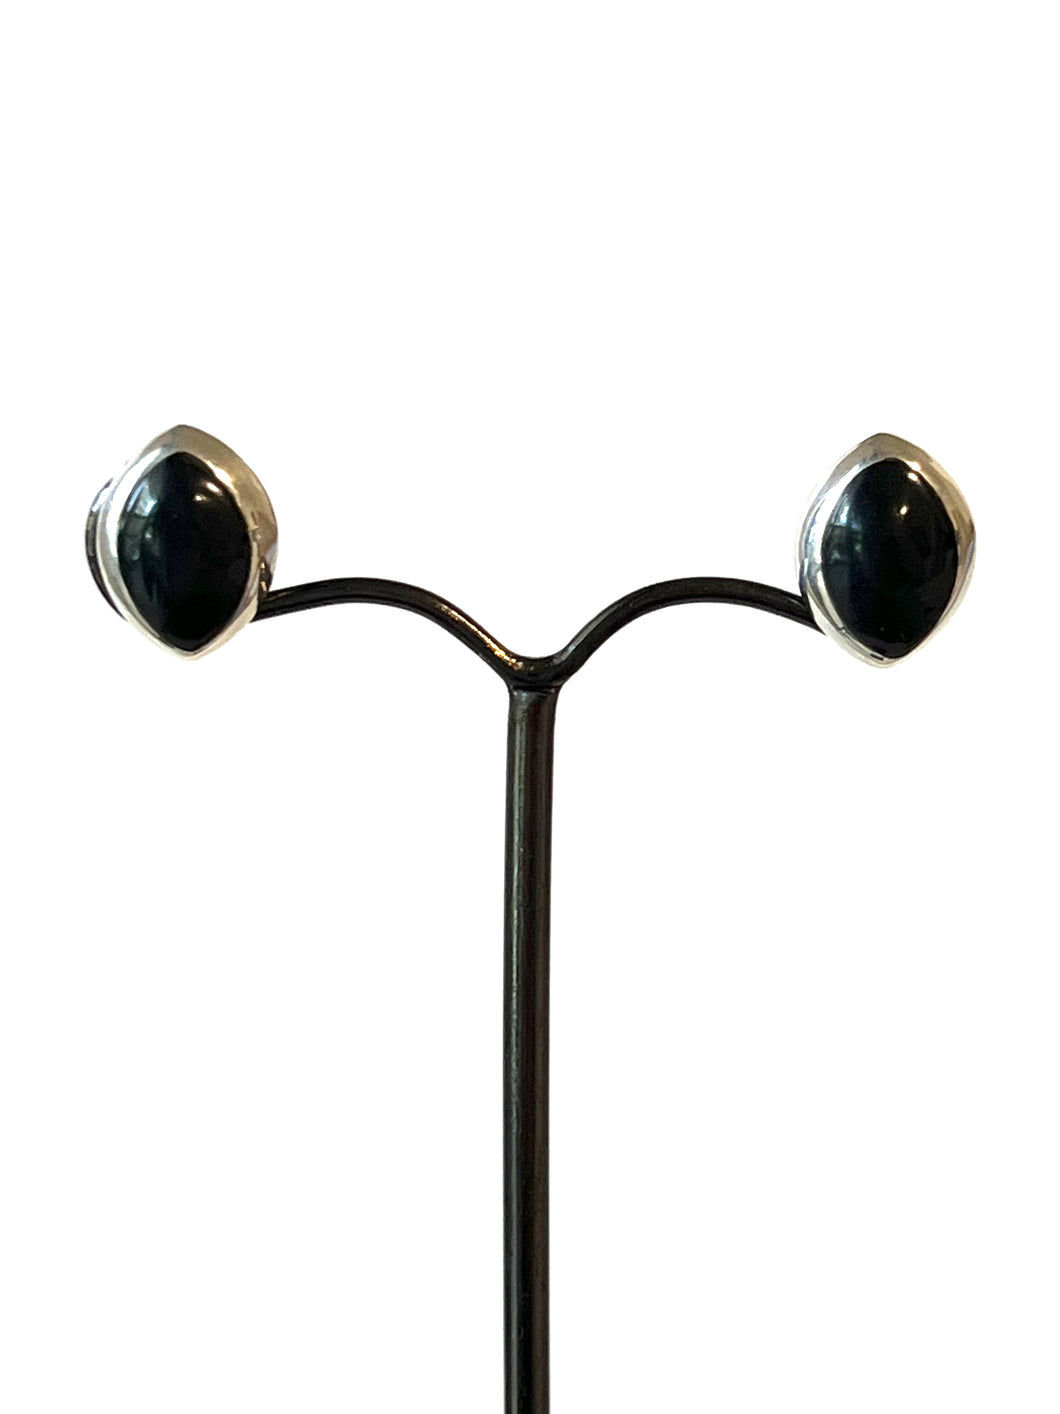 Black Oval Onyx Stud Earrings Set in Sterling Silver